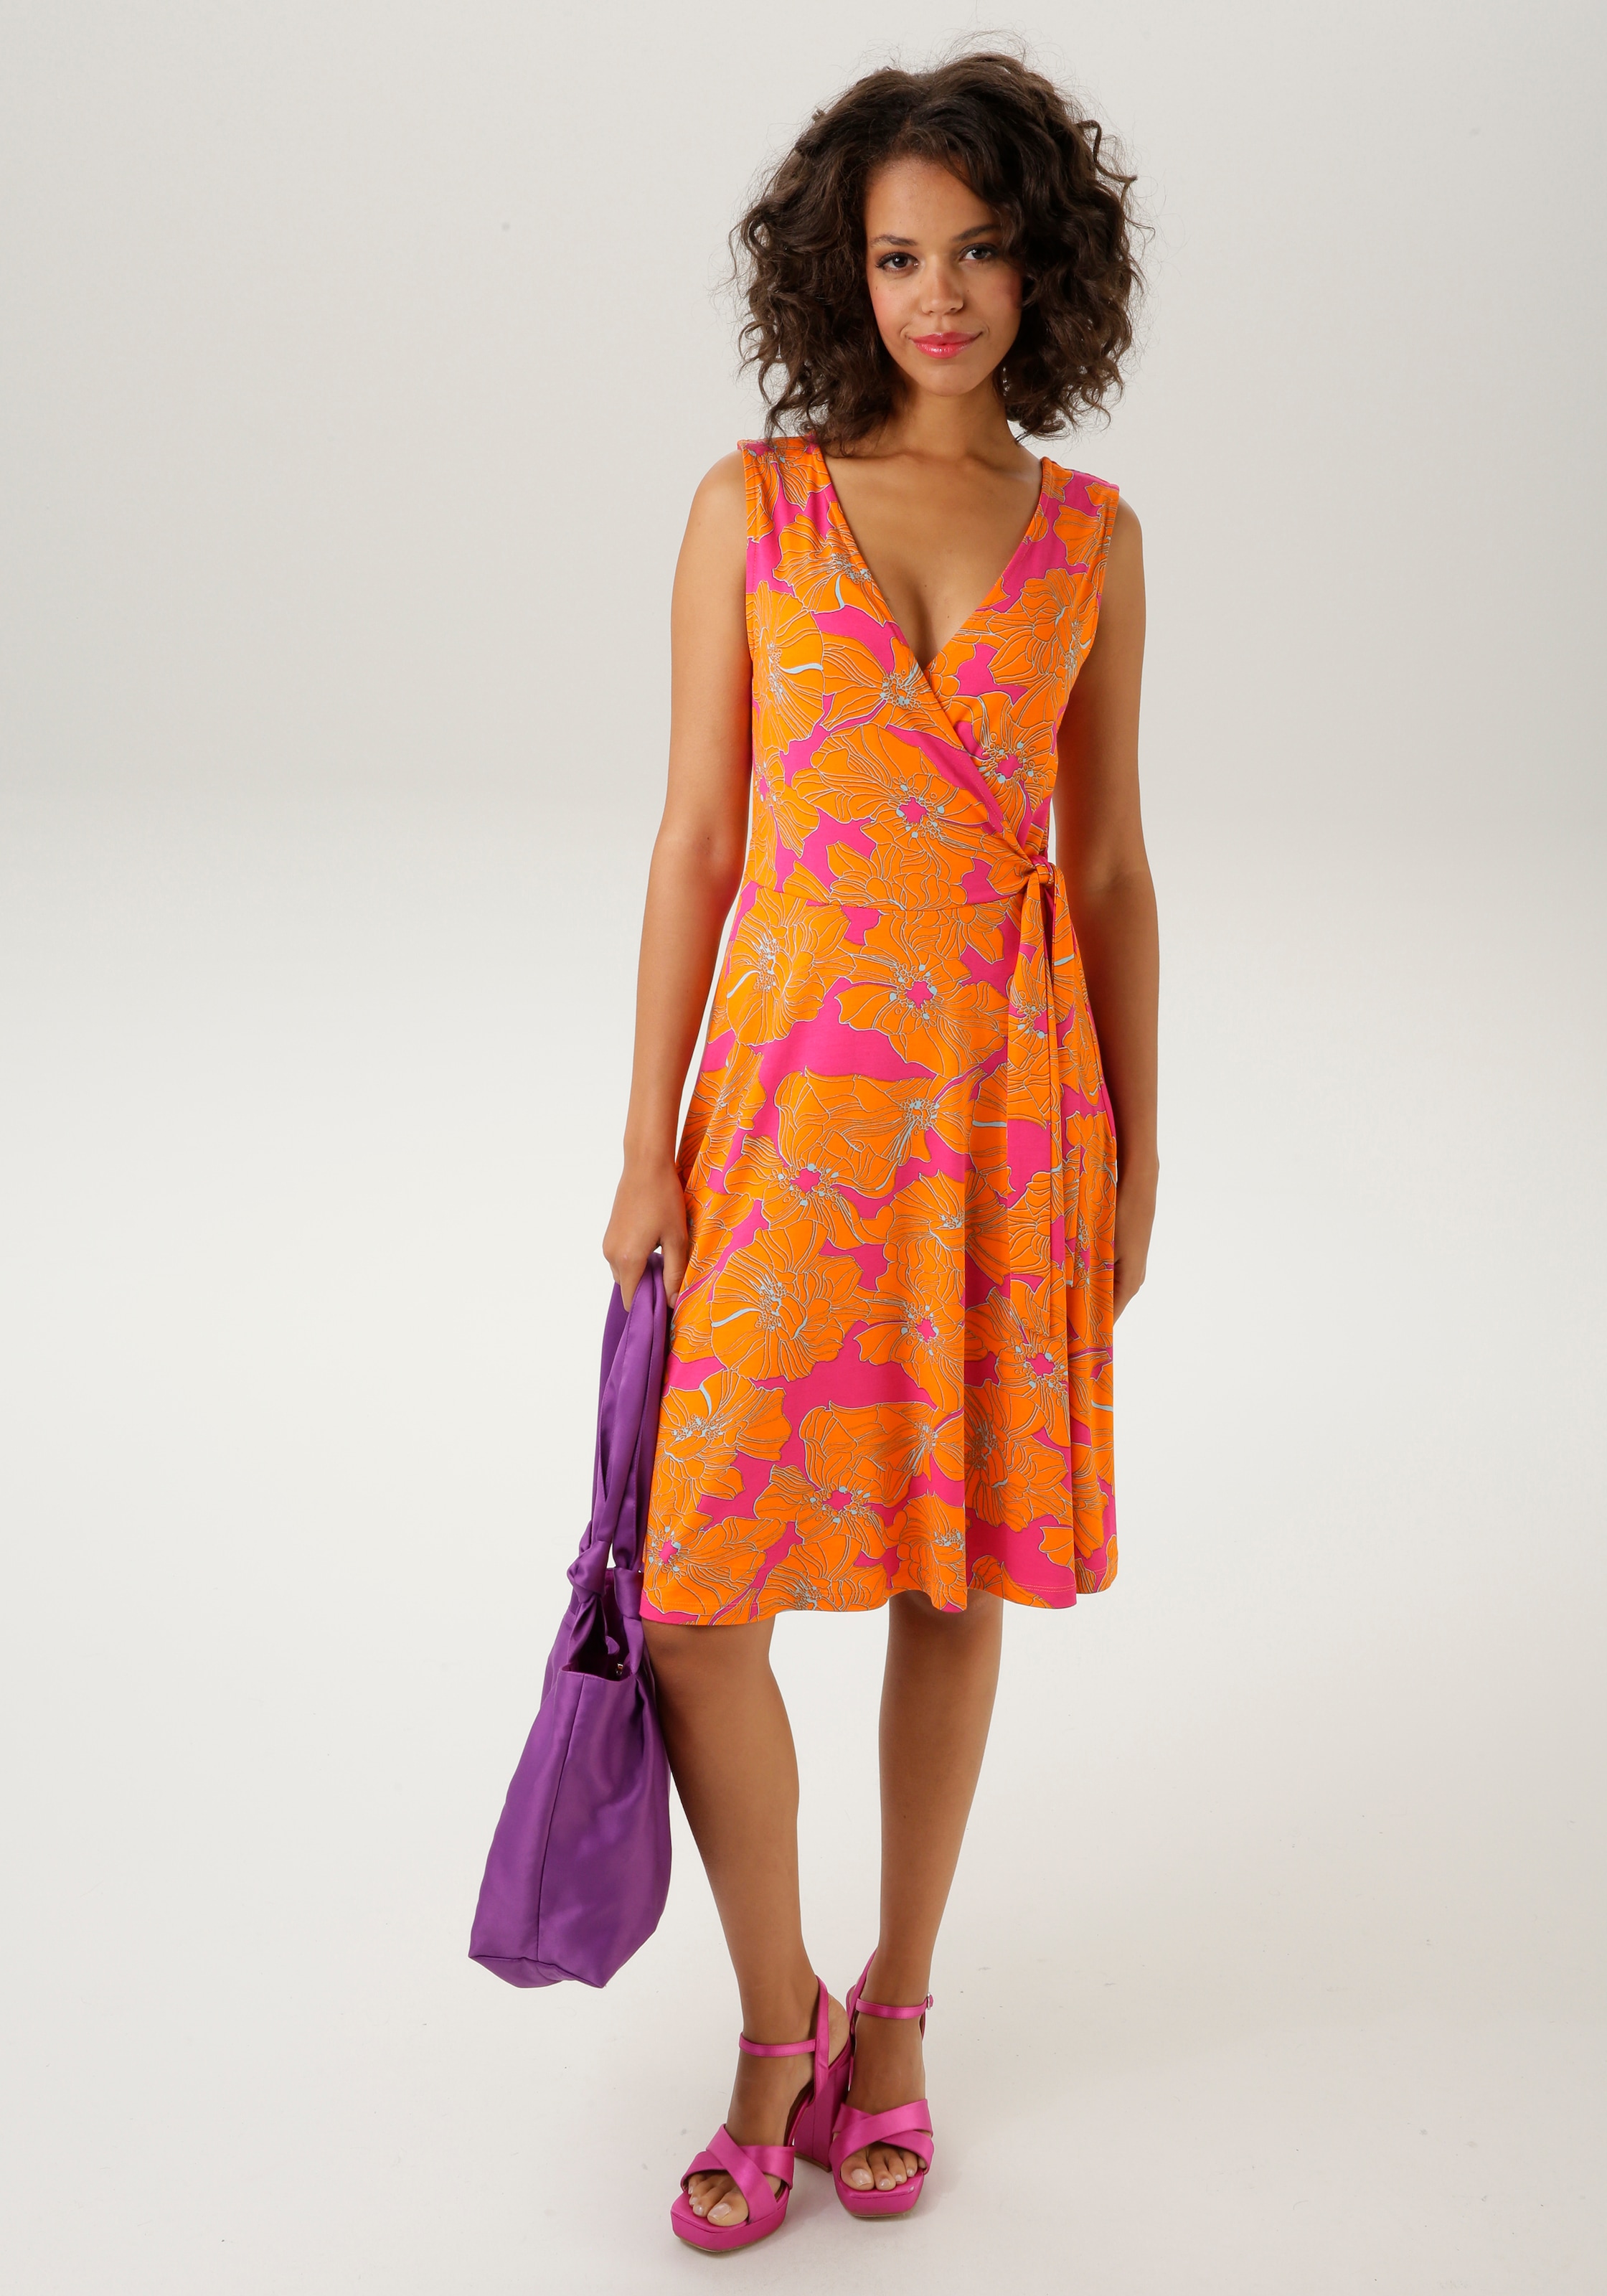 kaufen NEUE CASUAL farbintensivem, großflächigem Sommerkleid, - Aniston KOLLEKTION mit Blumendruck